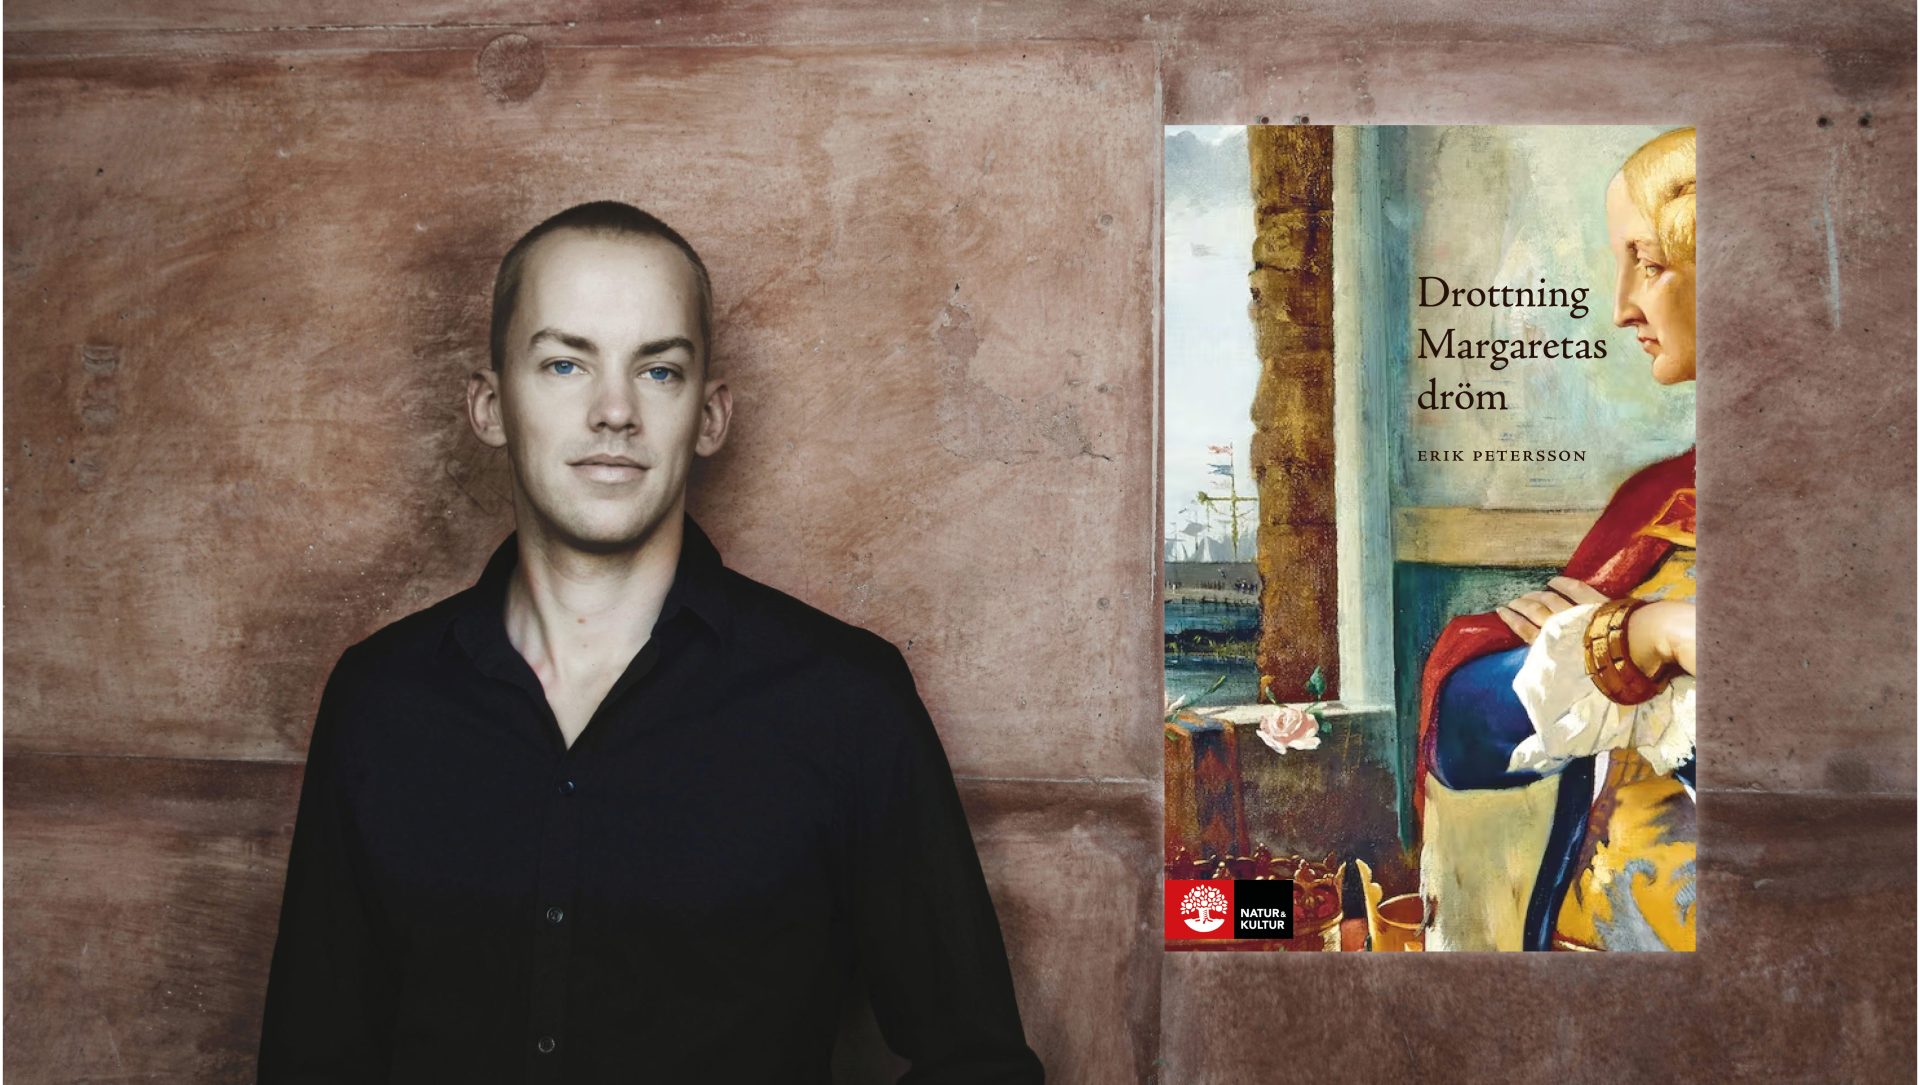 Ett kollage med ett porträtt på författaren Erik Petersson tillsammans med en bild på boken Drottning Margaretas dröm.